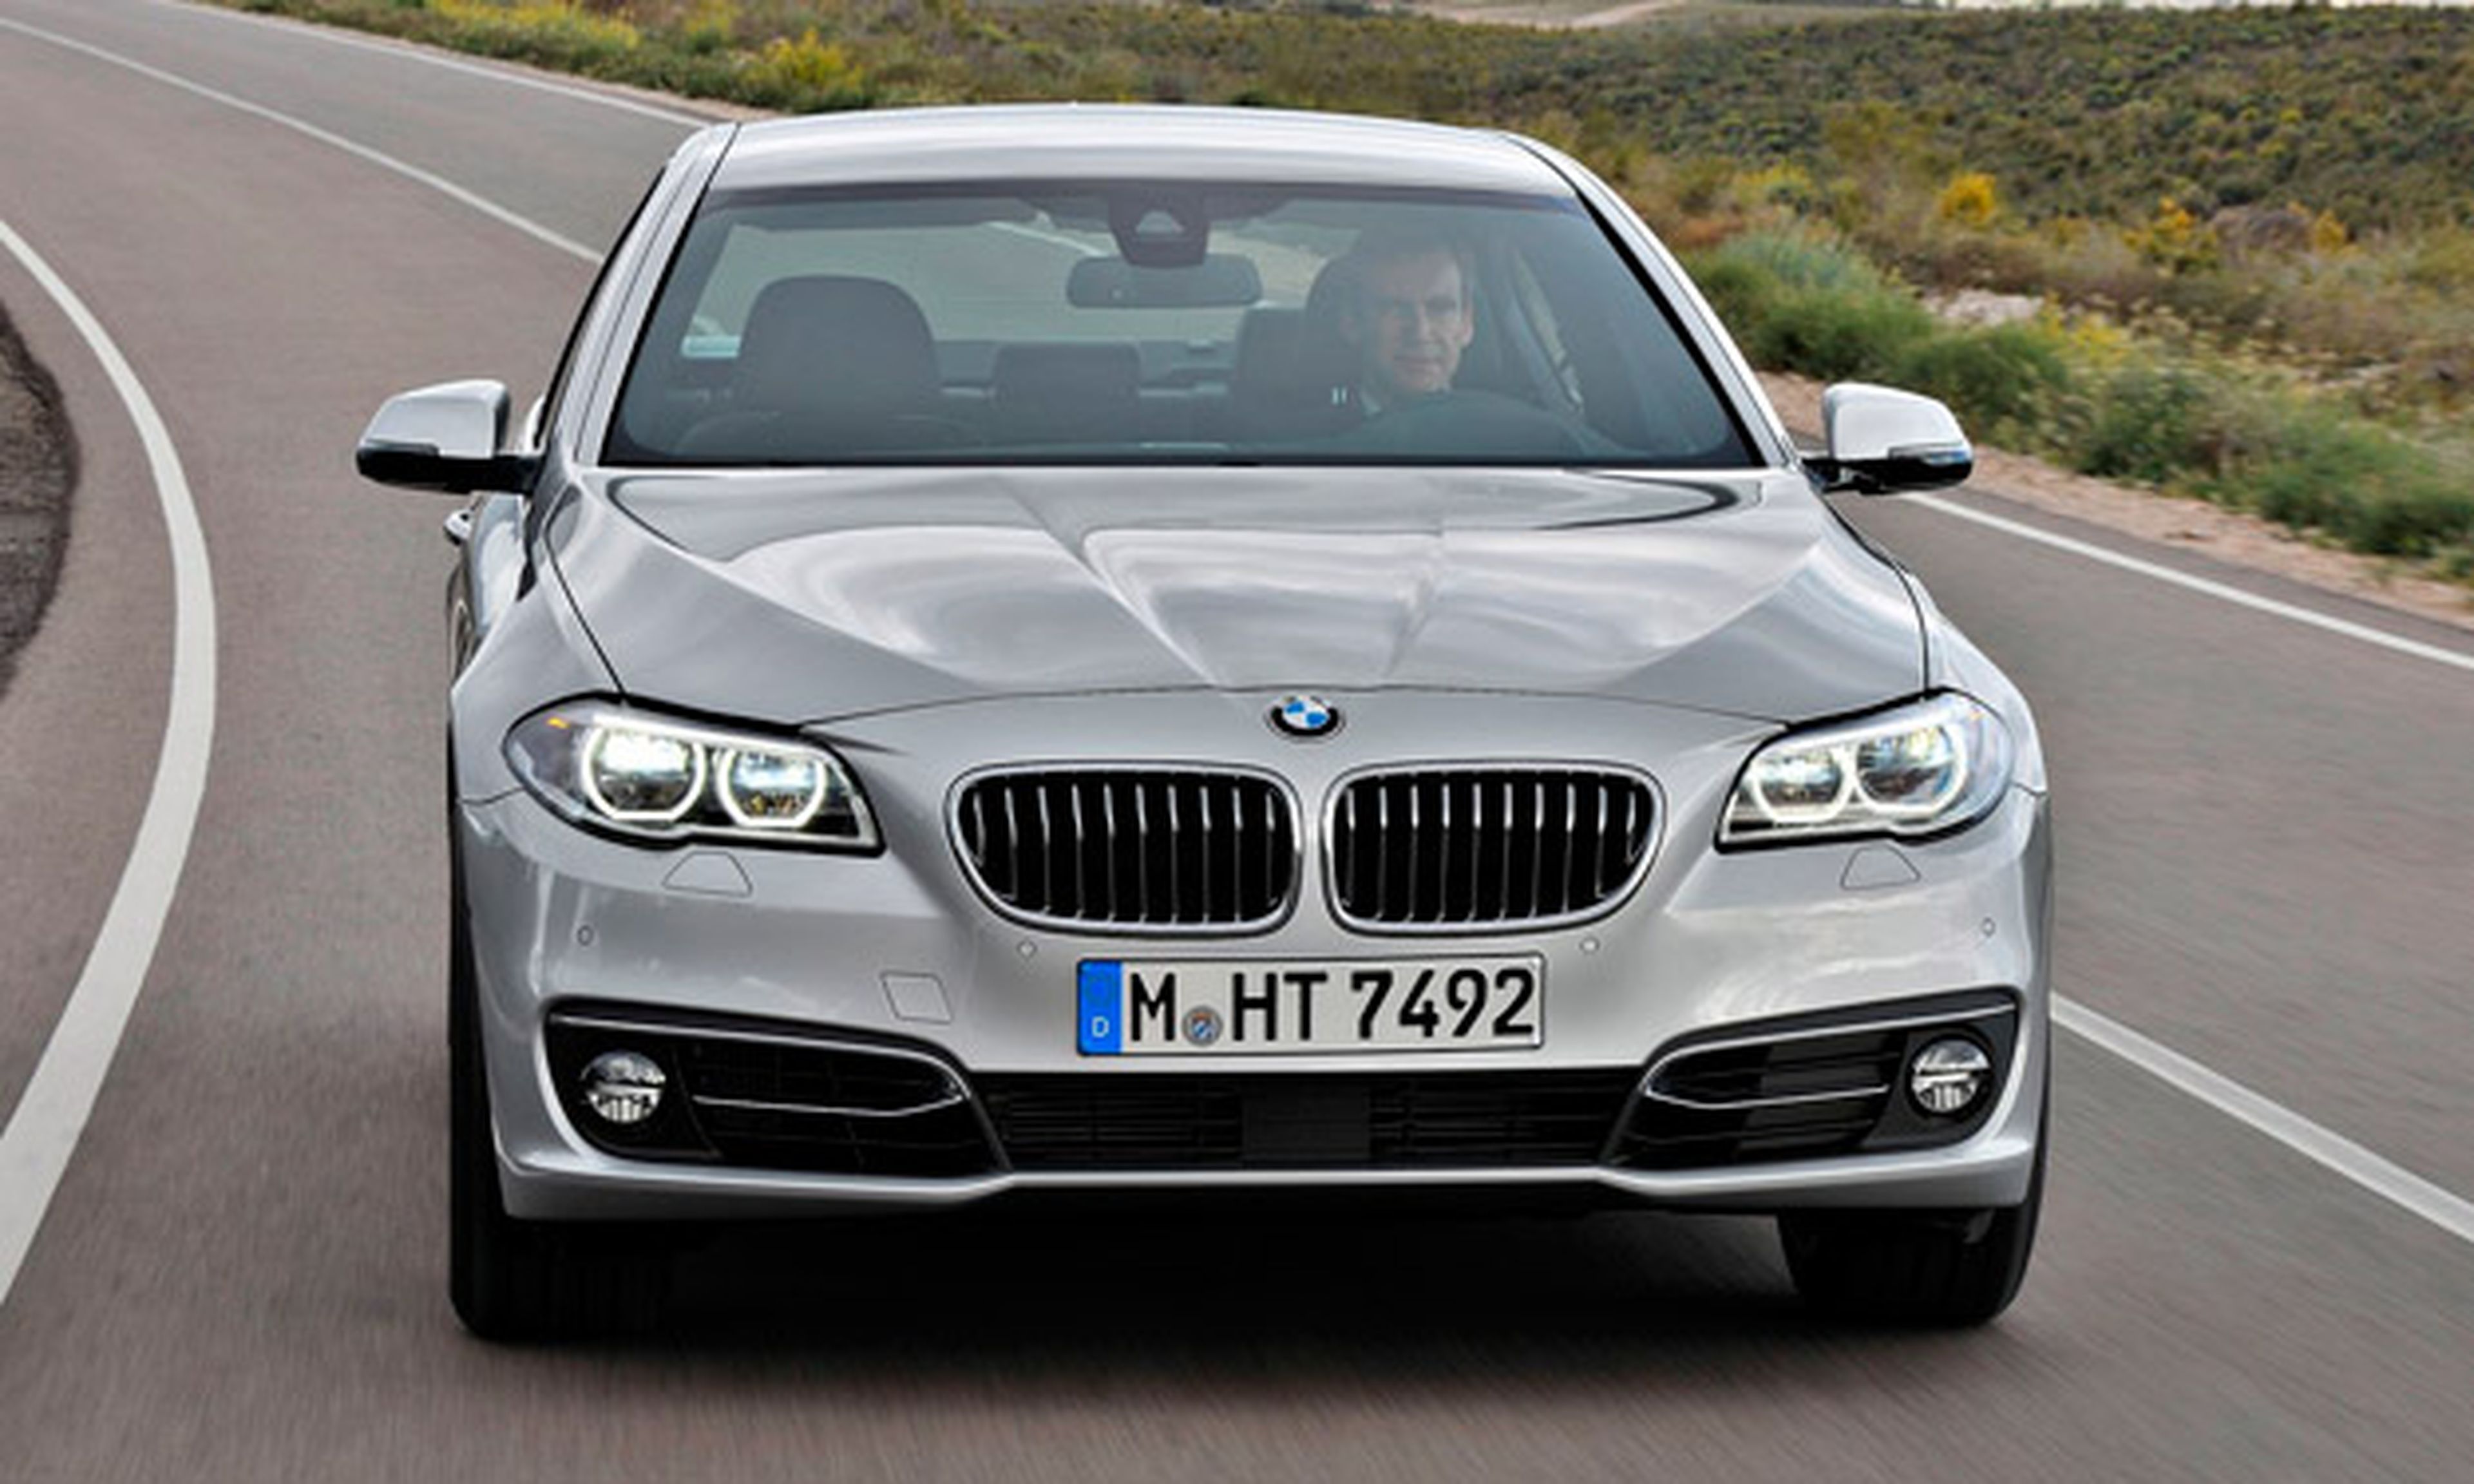 BMW Serie 5 2013